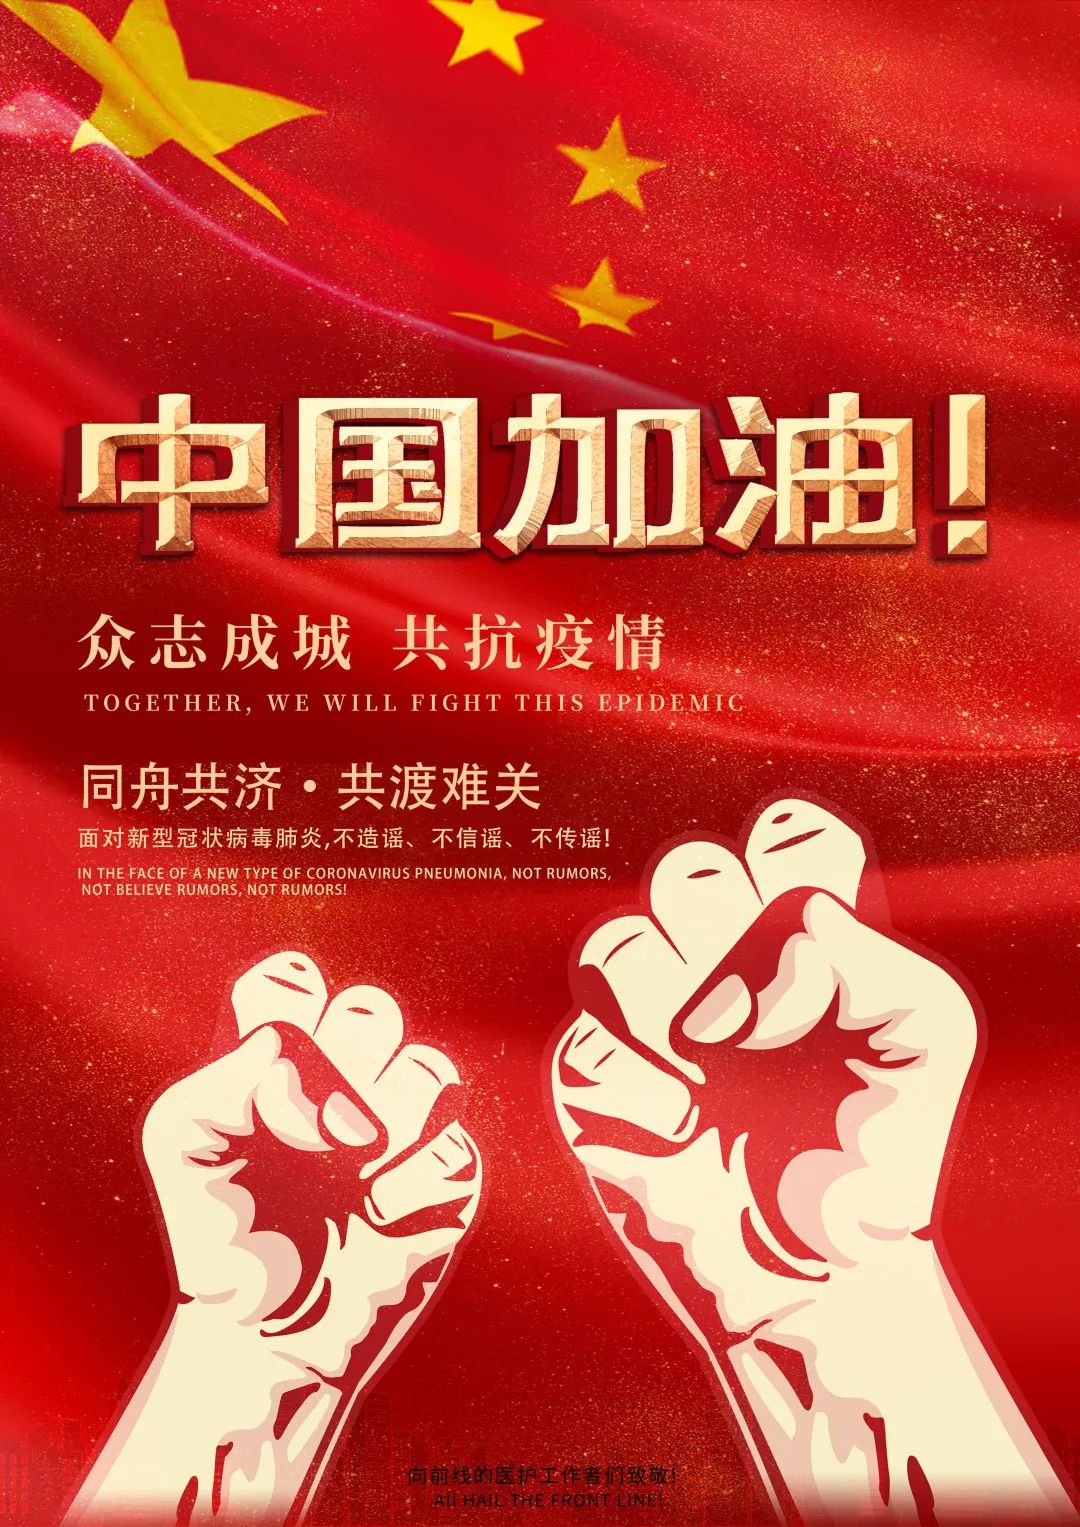 数艺1711 常兆旭作品简介:海报以红色为主色调,彰显中国人民抗击病毒